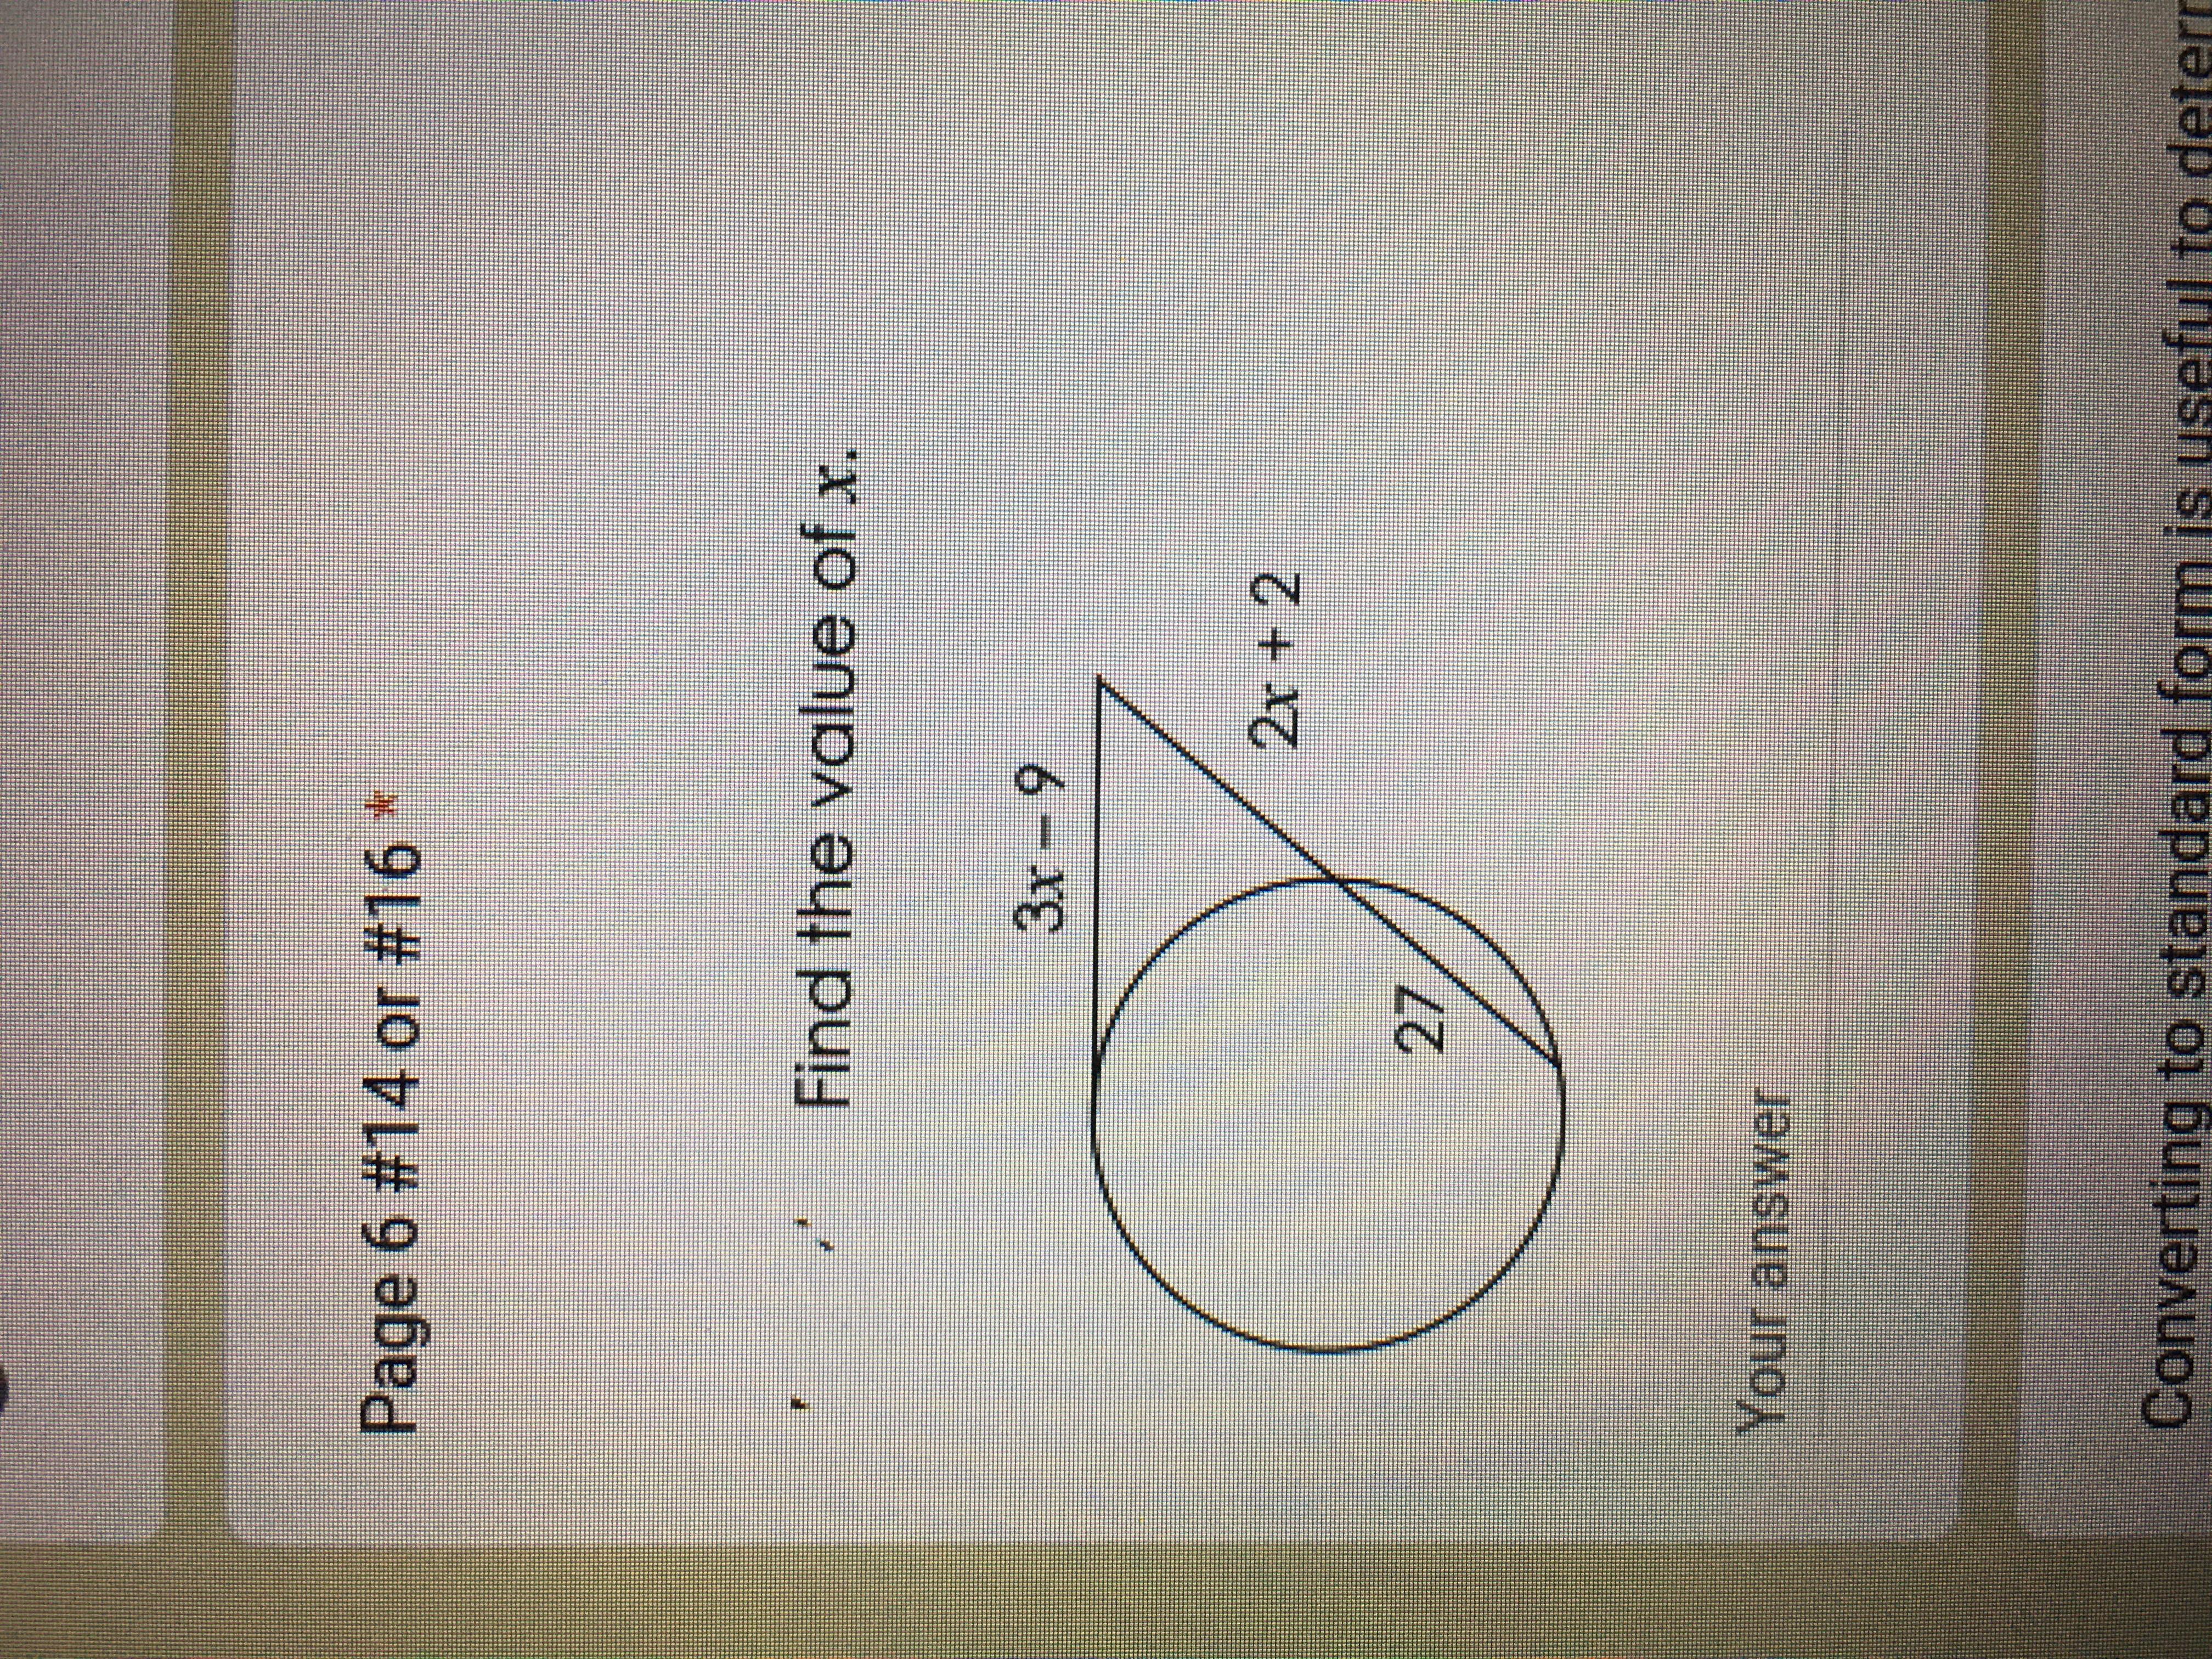 Find X . Geometry Please Help